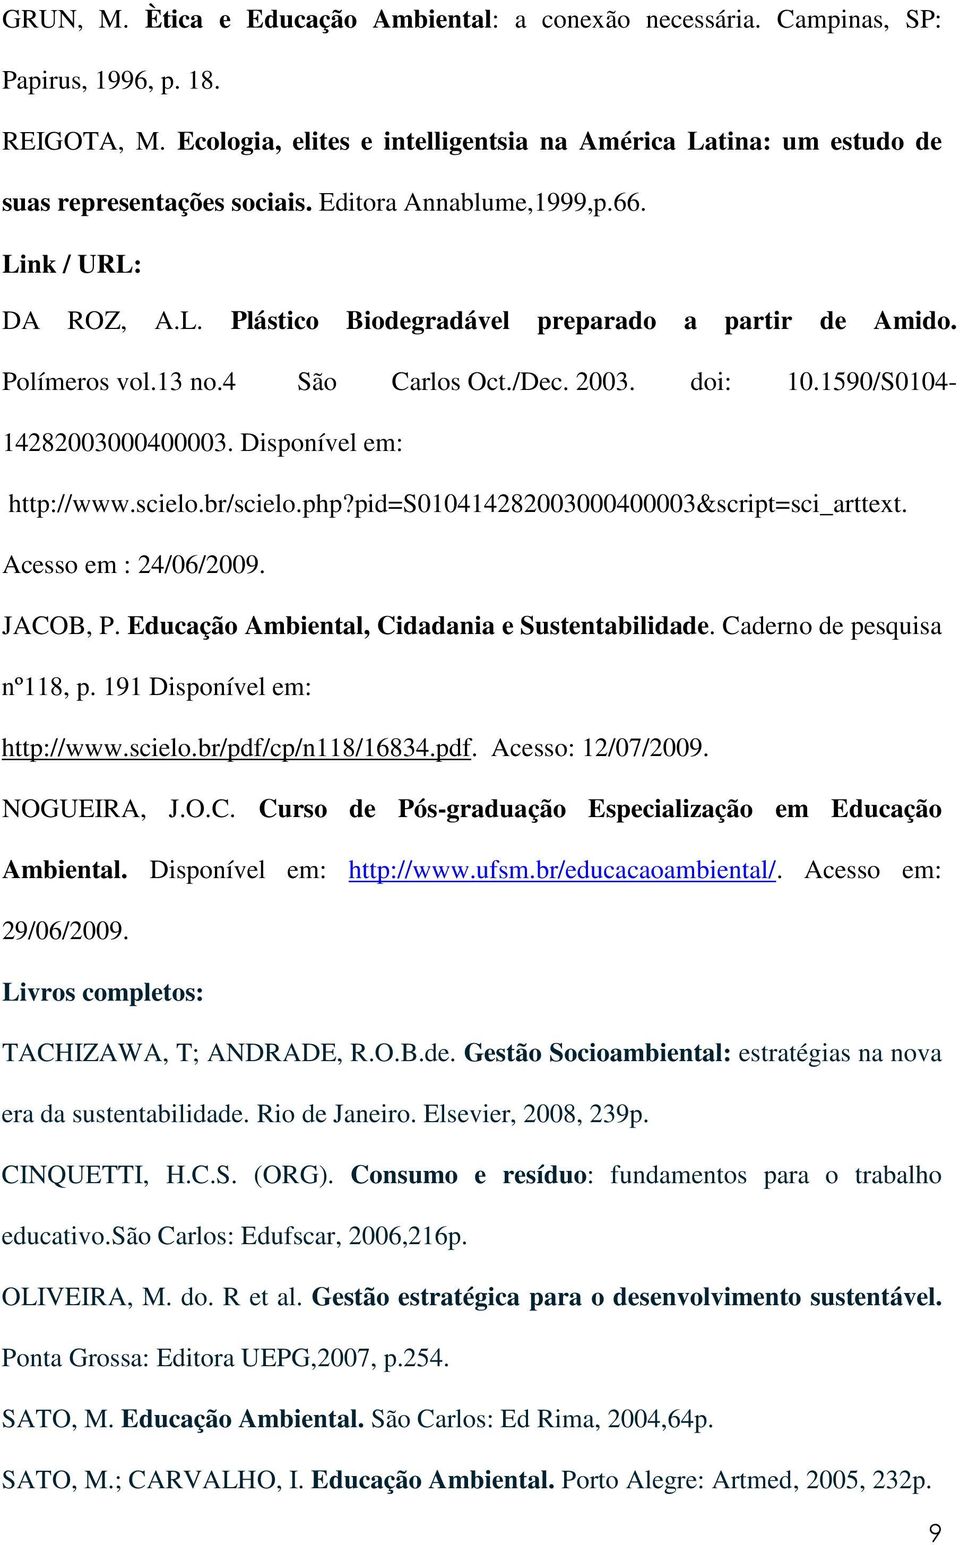 Polímeros vol.13 no.4 São Carlos Oct./Dec. 2003. doi: 10.1590/S0104-14282003000400003. Disponível em: http://www.scielo.br/scielo.php?pid=s010414282003000400003&script=sci_arttext.